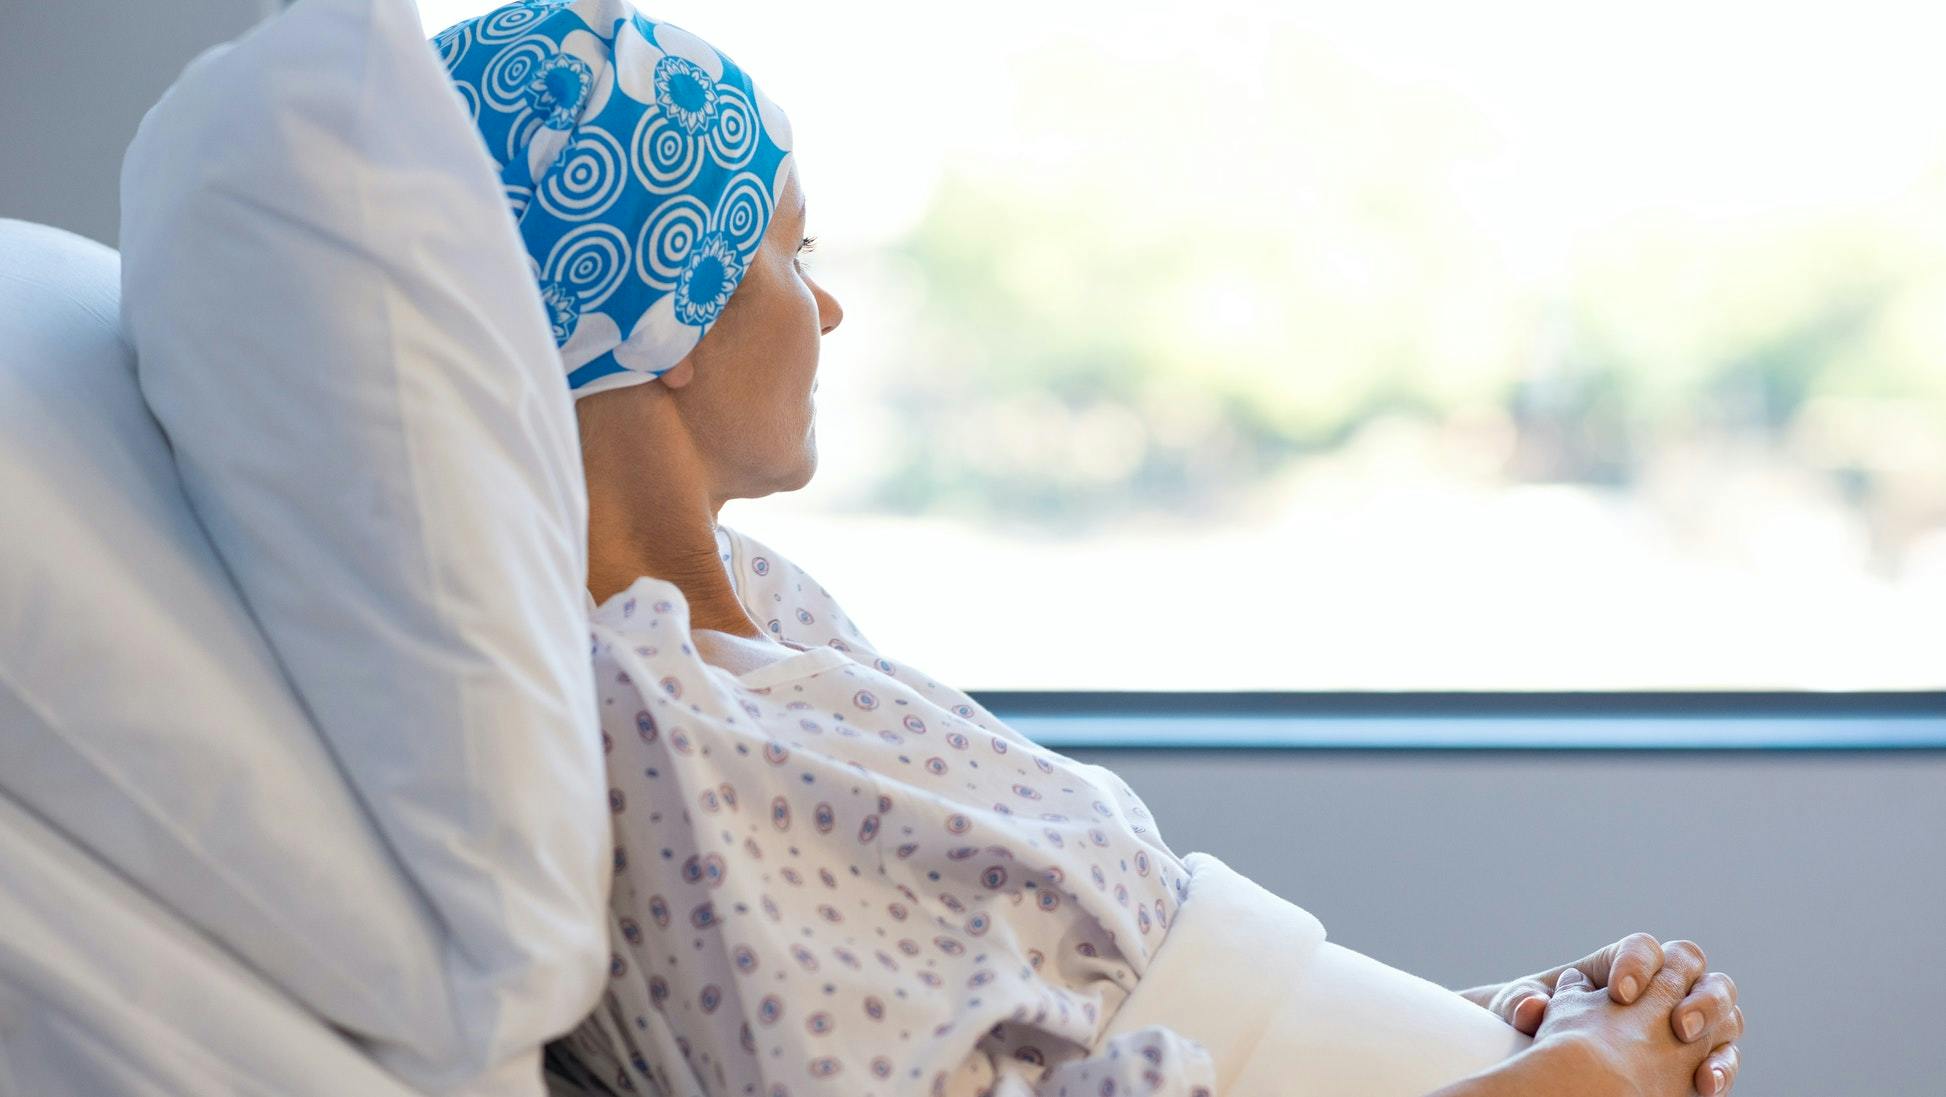 Kemoterapi - bivirkninger ved kemobehandling